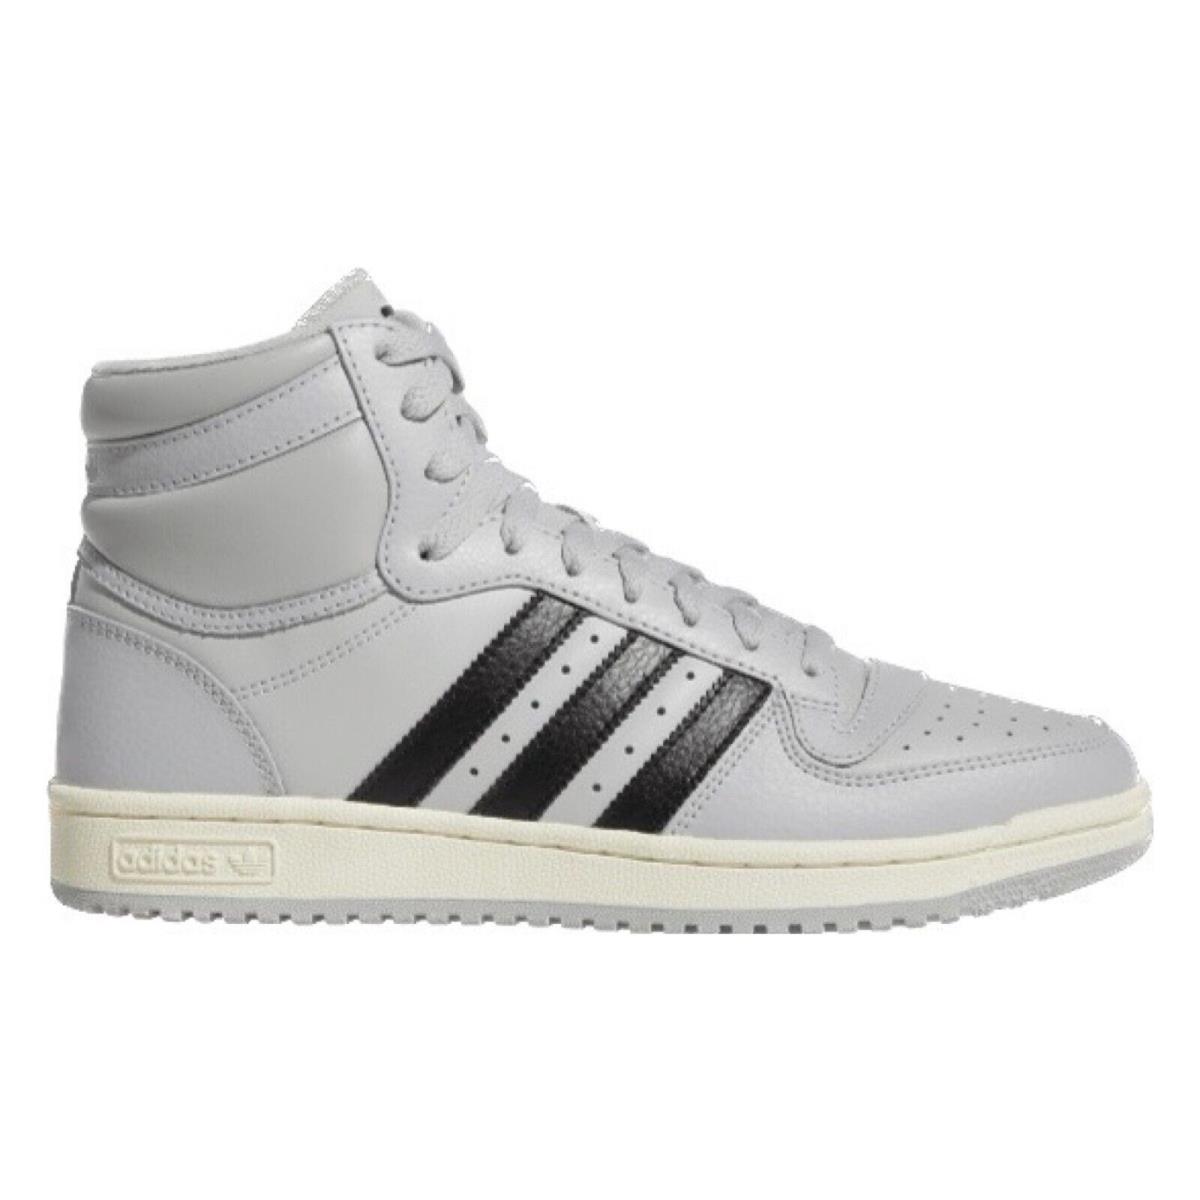 Adidas Originals Top Ten Men`s Sneakers Comfort Sport Casual Shoes Grey Cream - Gray, Manufacturer: Grey/Cream